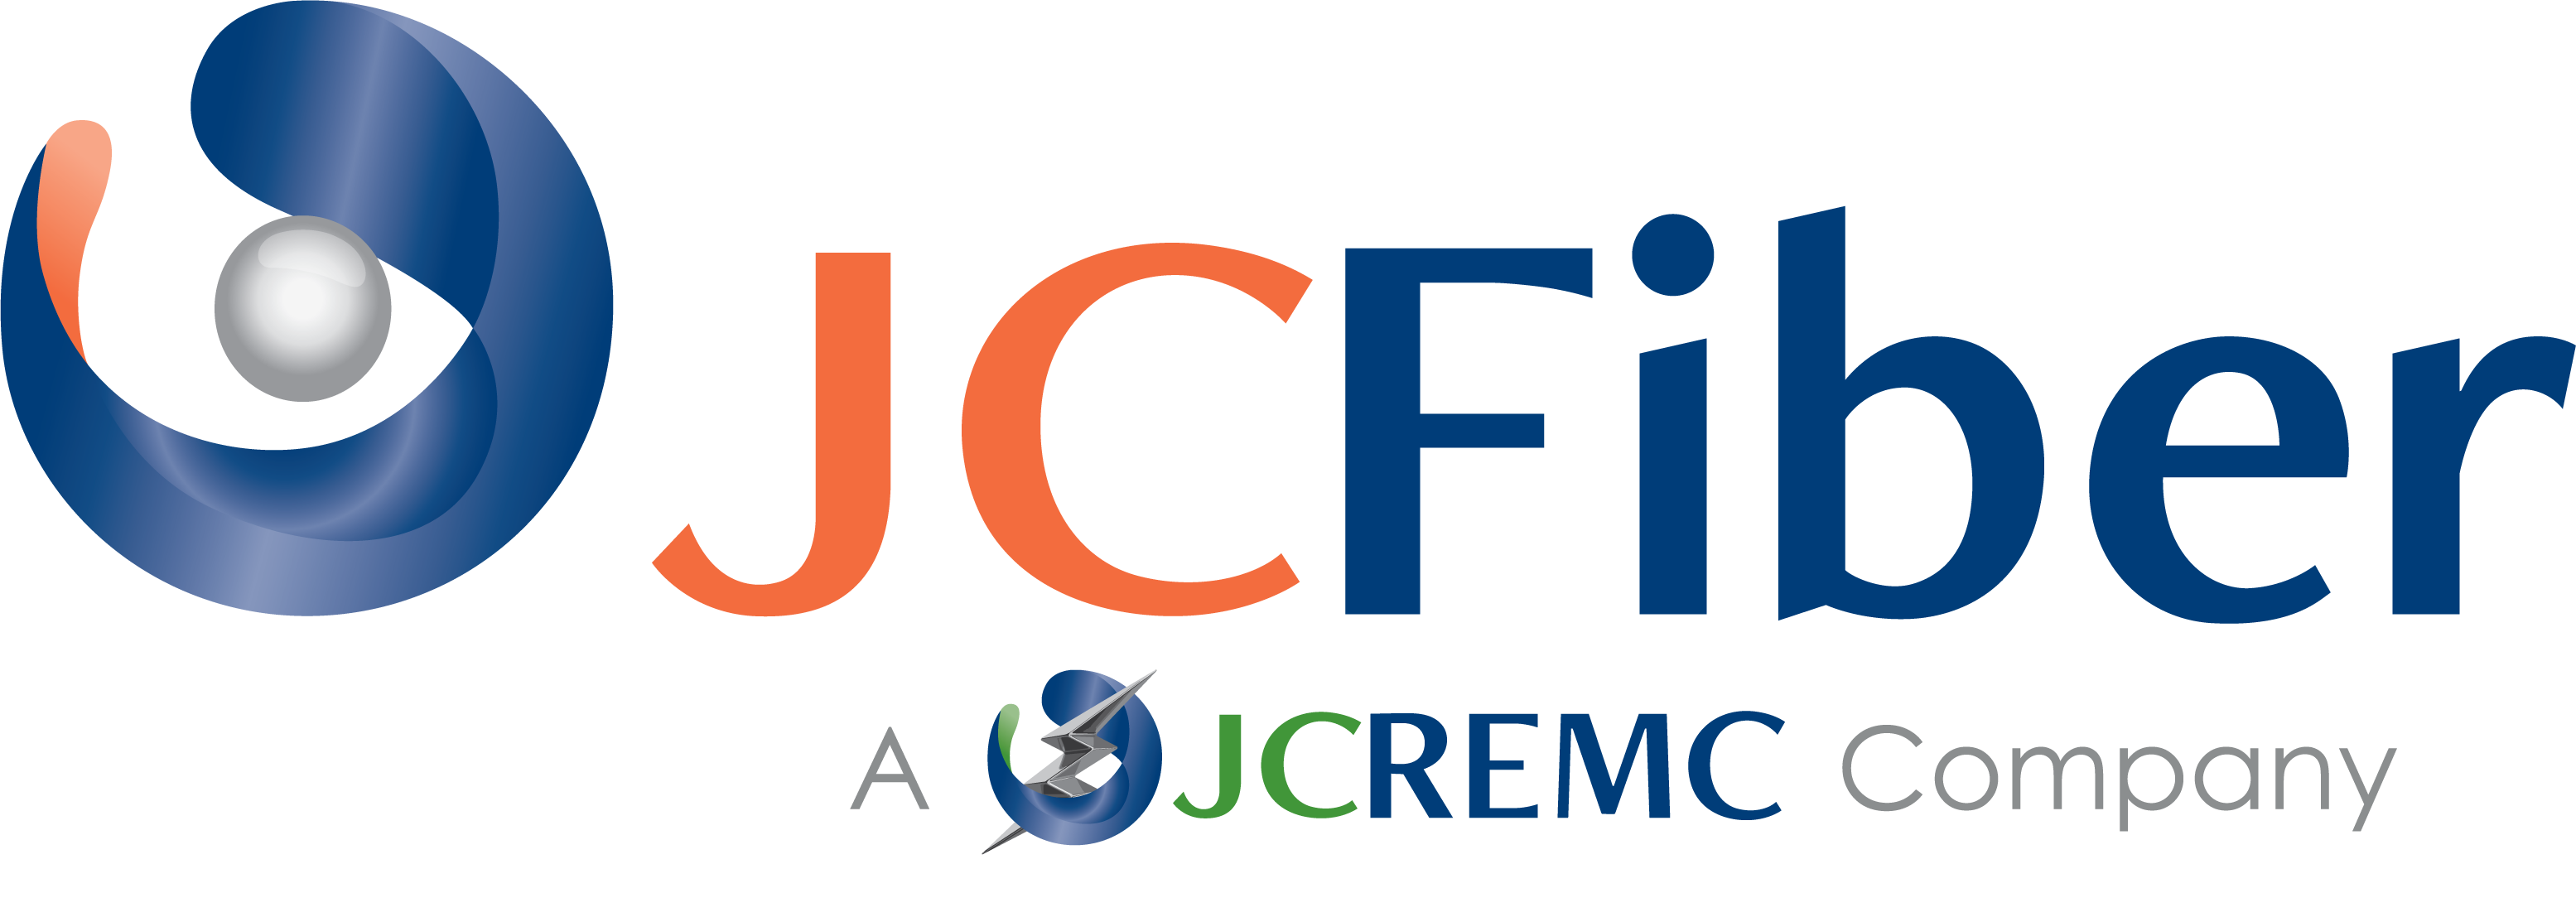 JCFiber Logo Cobrand